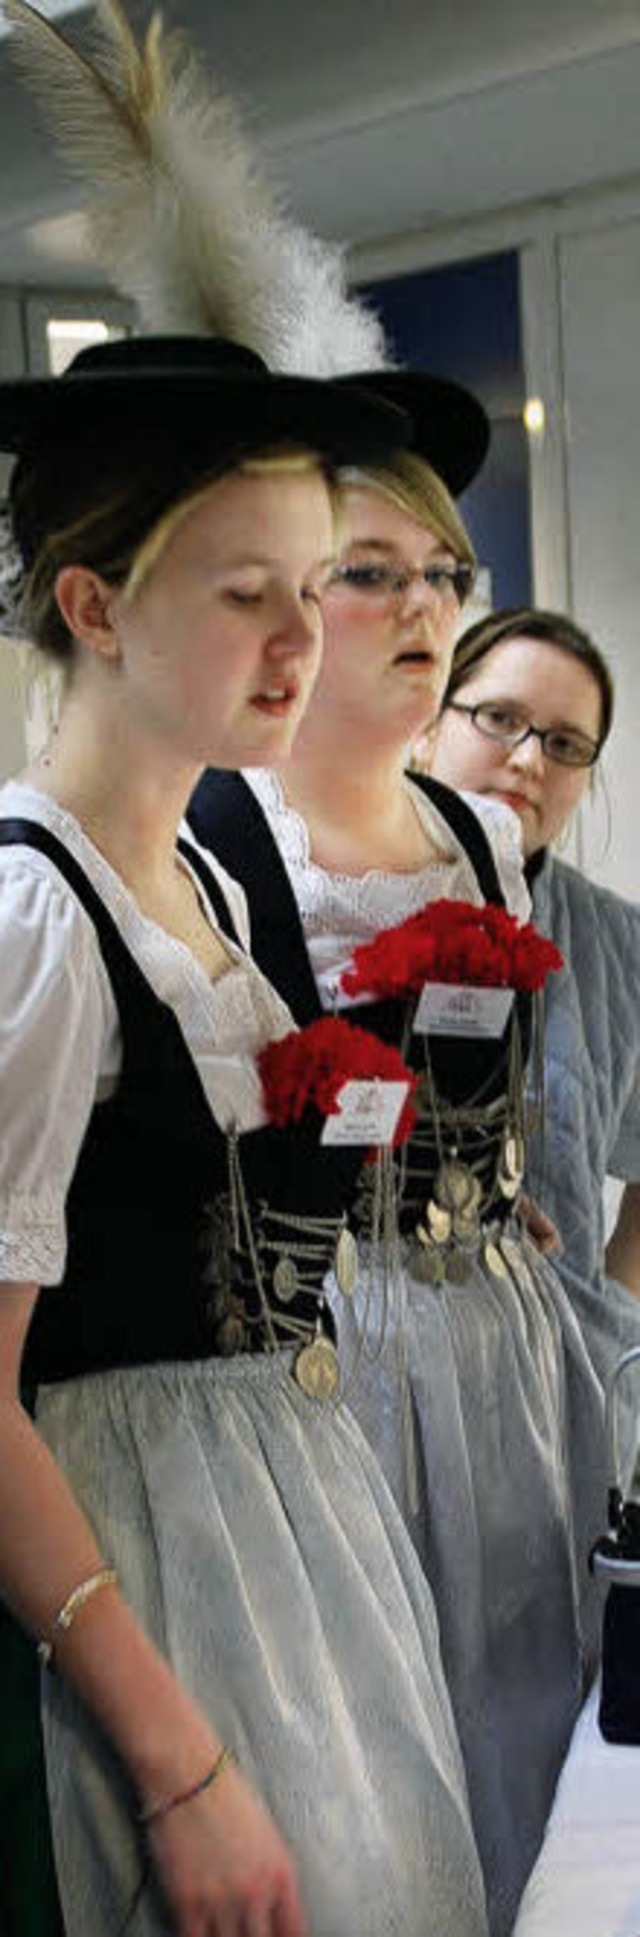 Zwei Klnerinnen in bayrischer Tracht - auch das gibt's.   | Foto: Beil